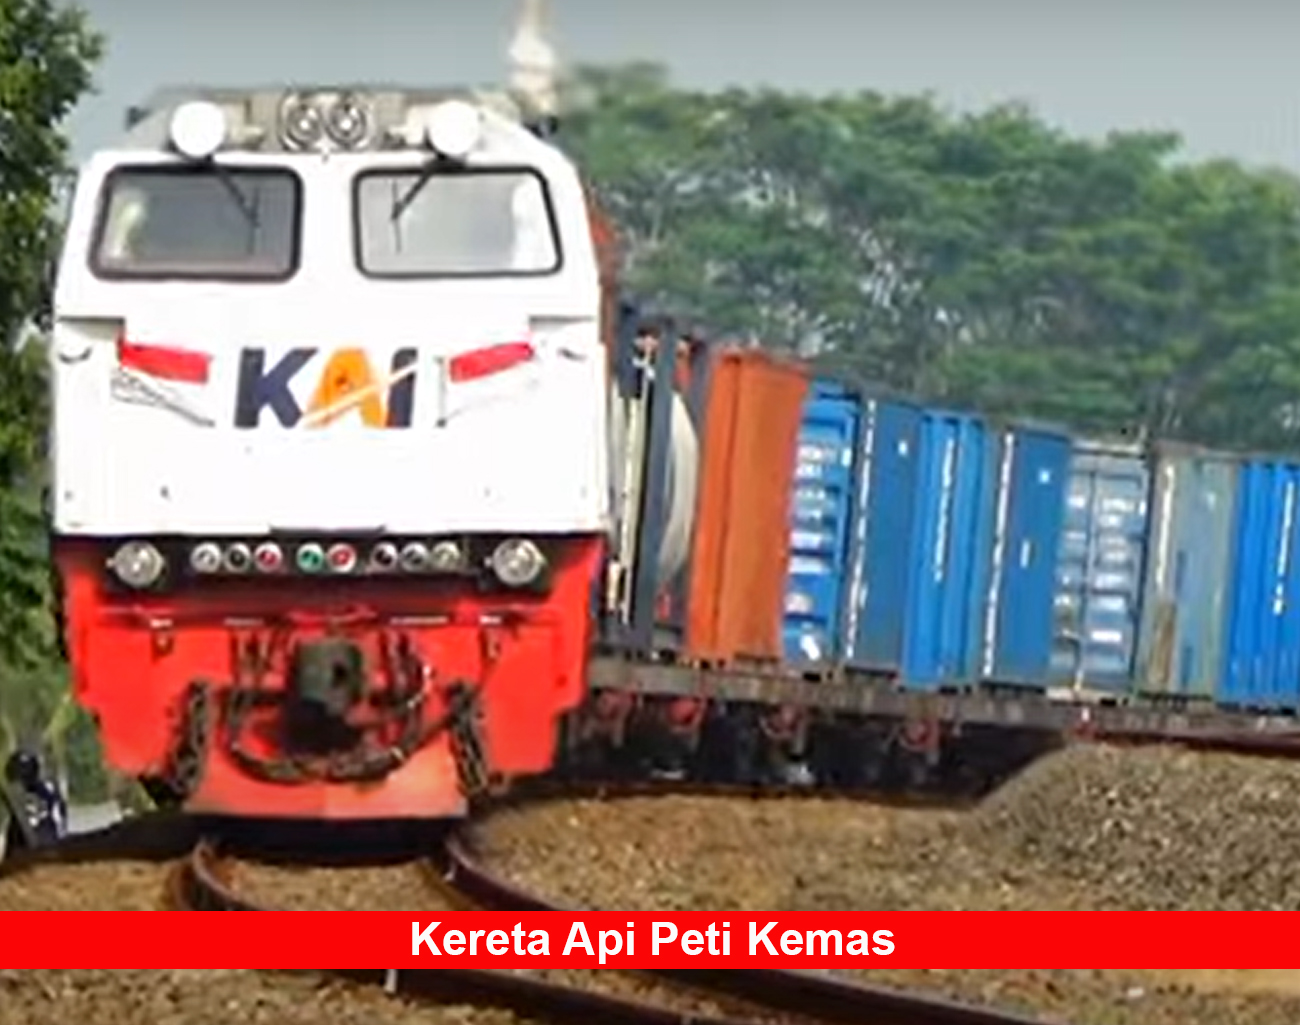 Pembangunan Stasiun Kereta Api Angkutan Batubara Dapat Penolakan Warga Desa Sirah Pulau Merapi Timur Lahat